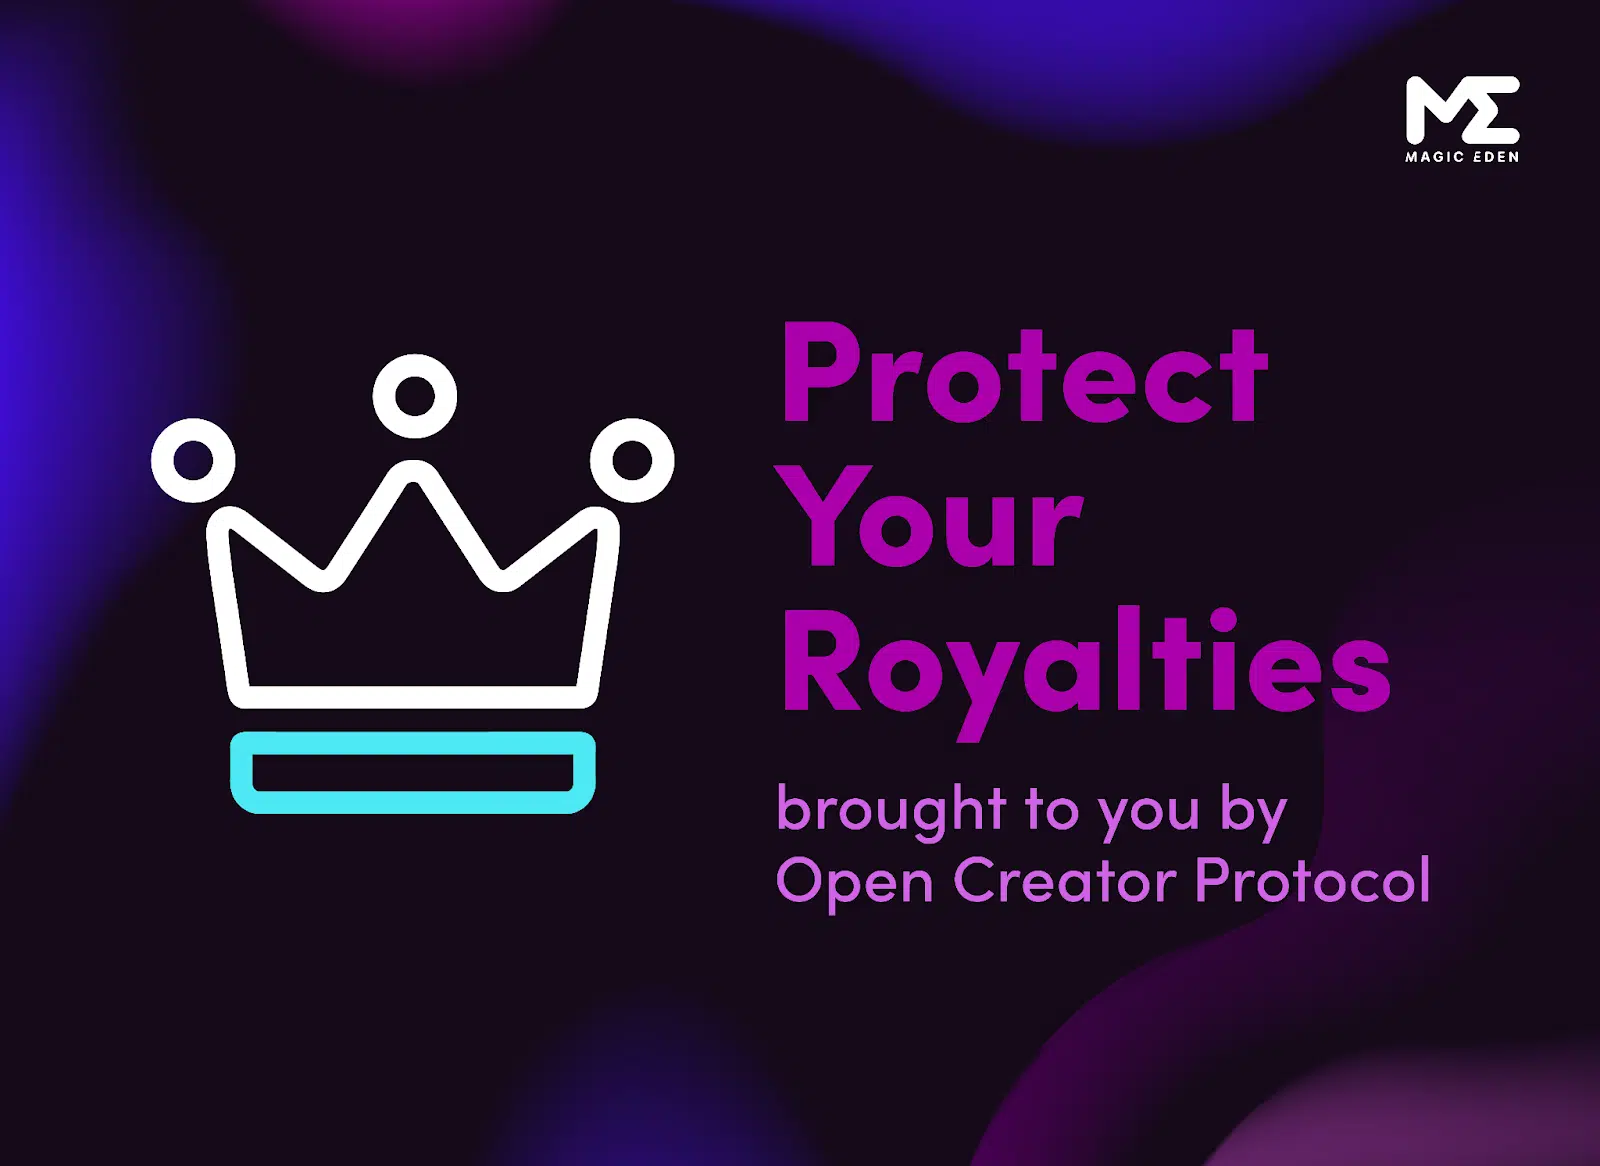 Open Creator Protocol